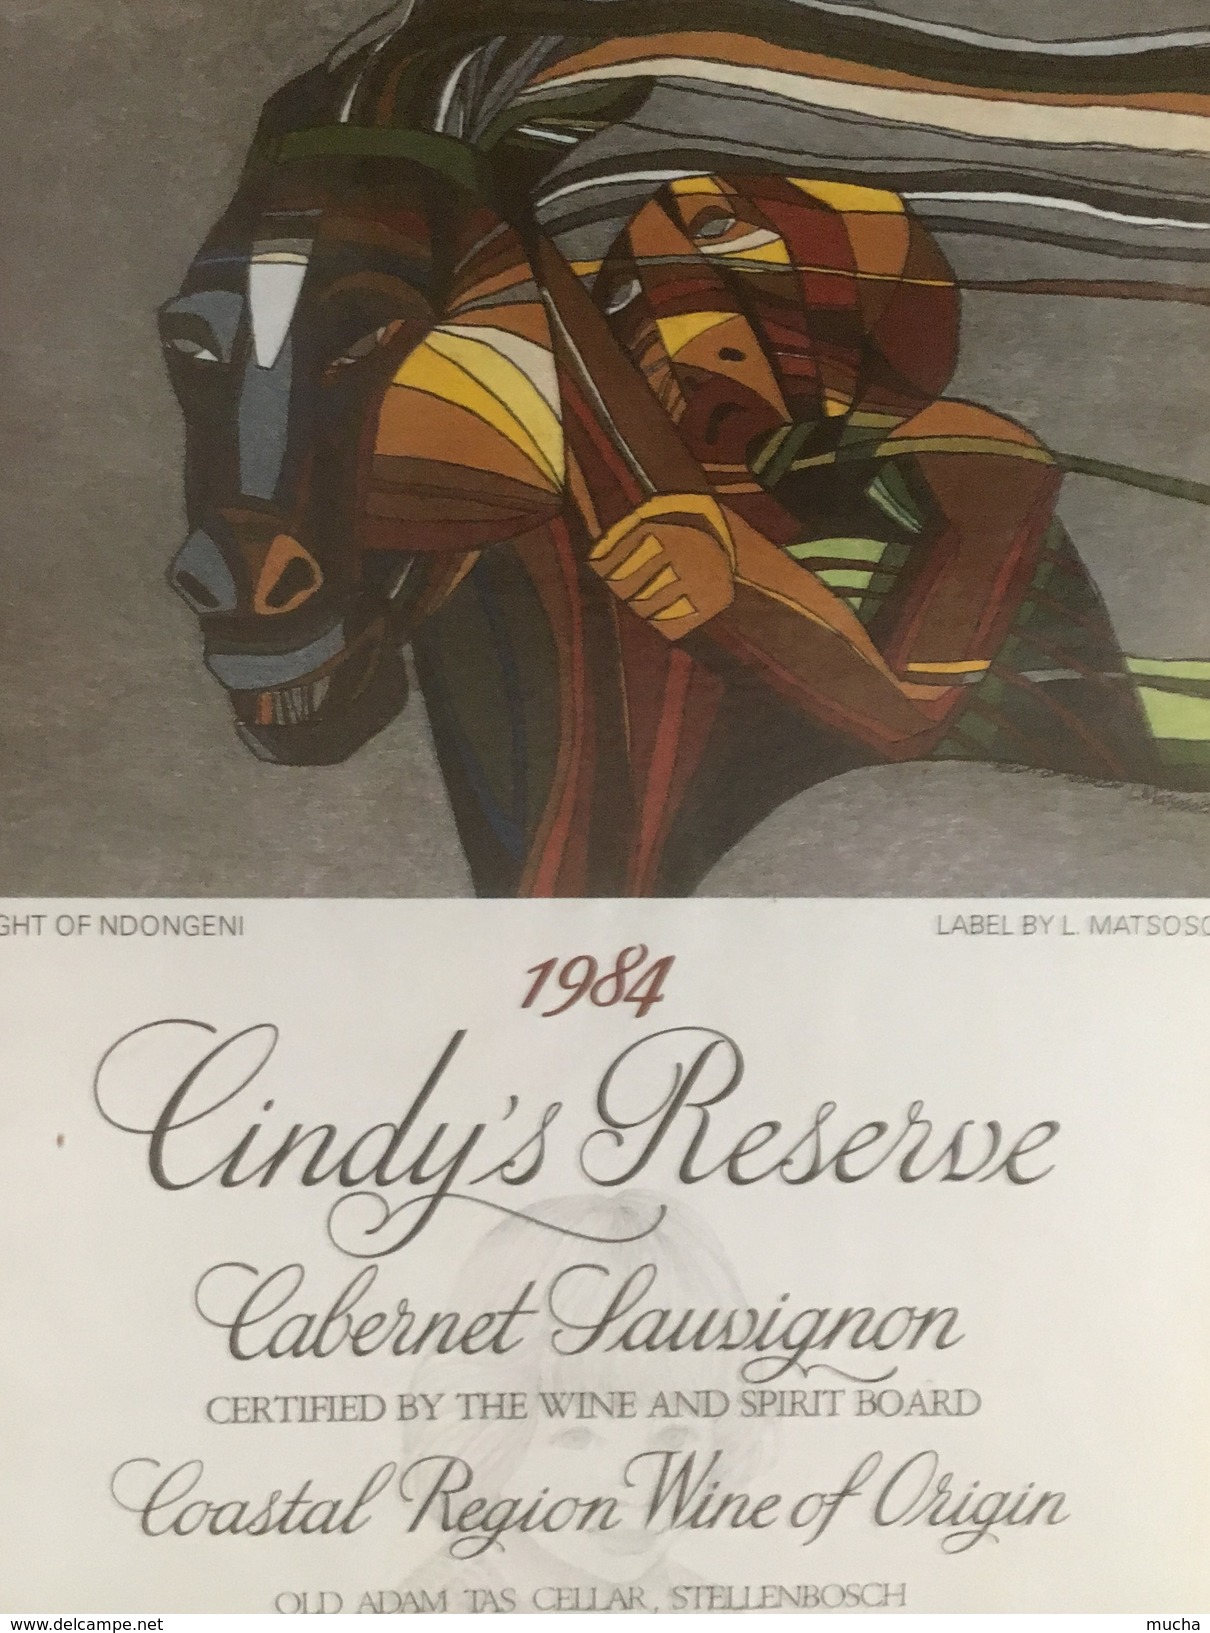 4564 -  Cindy's Réserve 1984 Cabernet Sauvignon Afrique Du Sud Flight Of Ndongeni Artiste L.Matsoso - Art